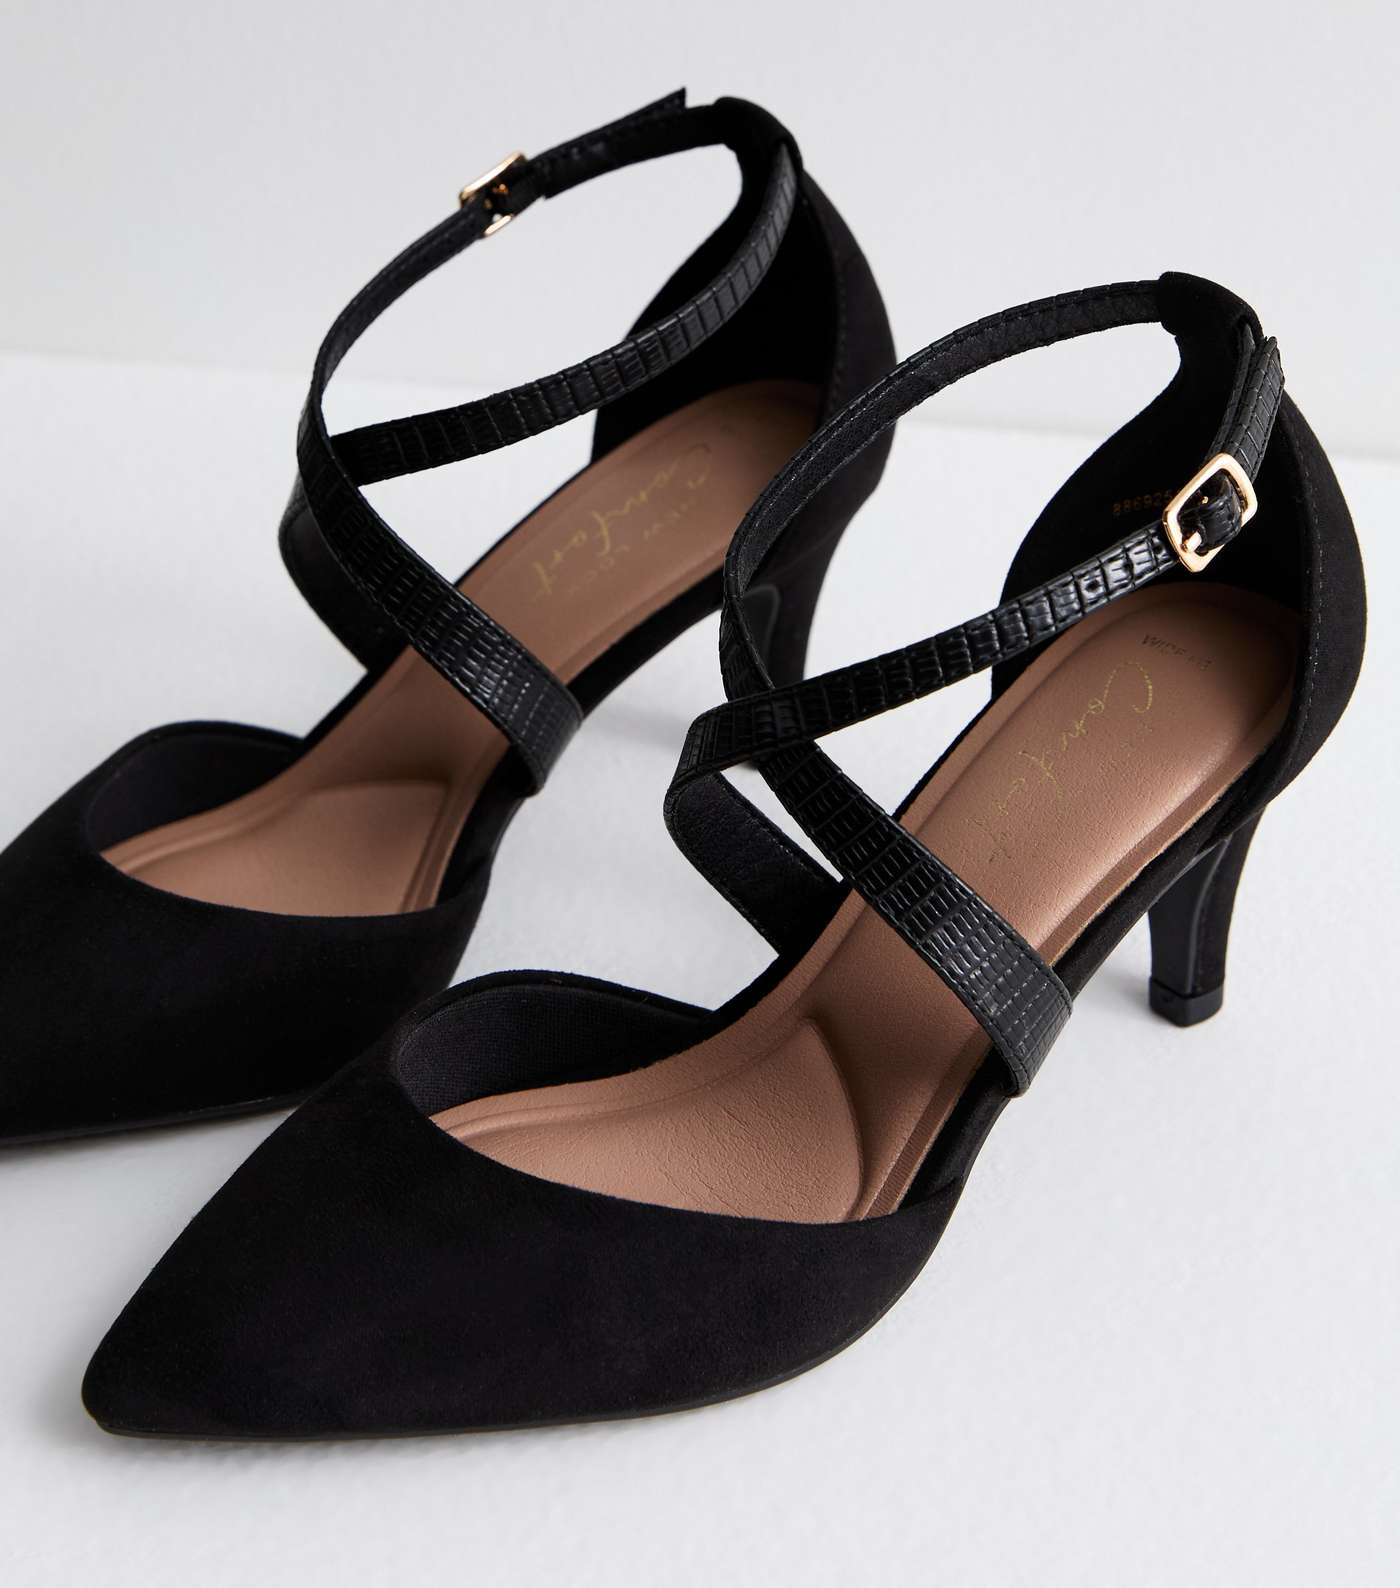 Wide Fit Black Suedette Stiletto Heel Court Shoes Image 3